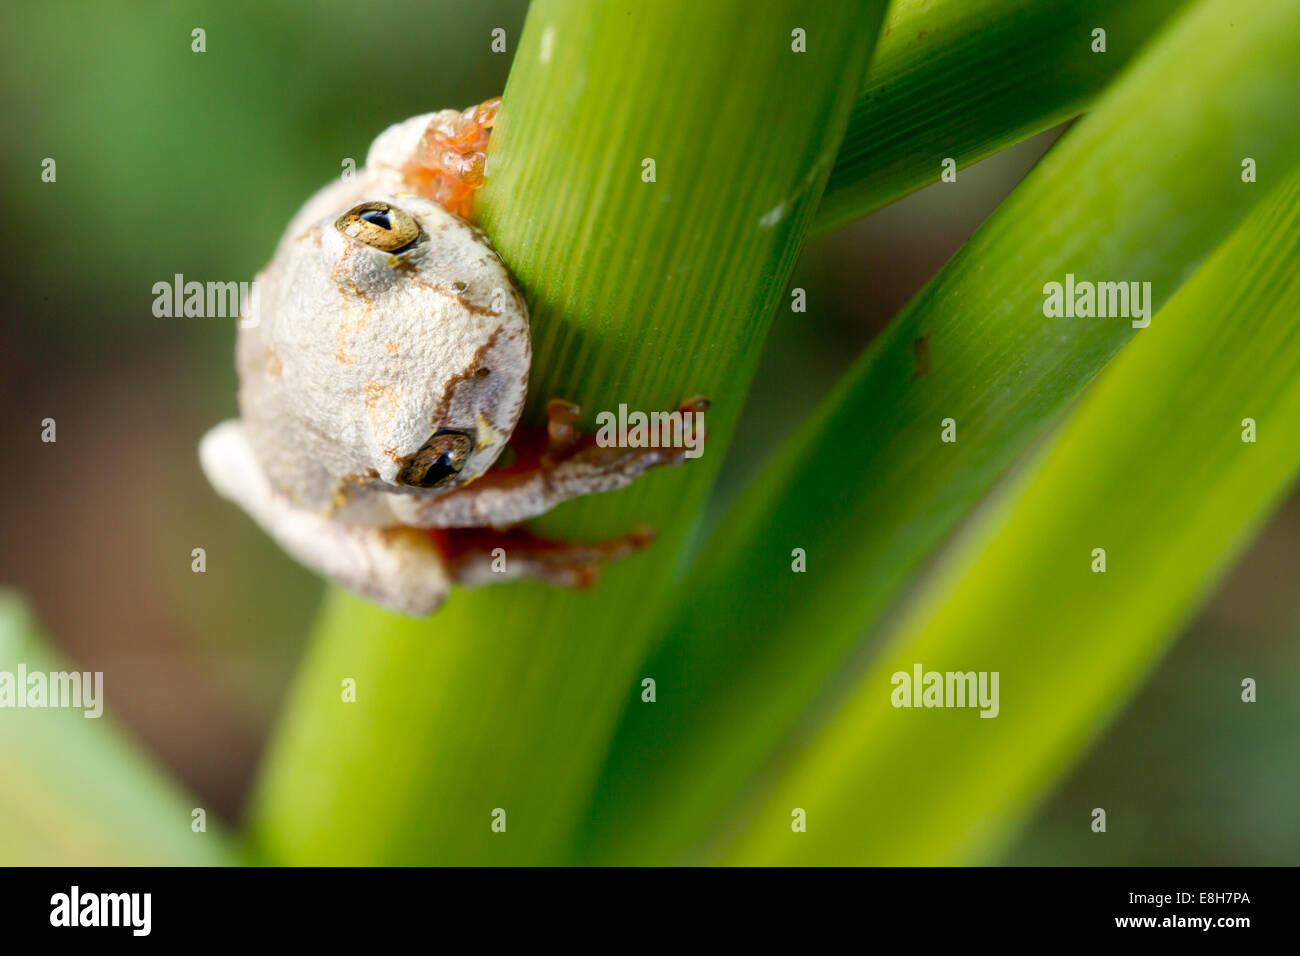 Ein Reed-Frosch hängt mit einem festen Griff an einem grünen Stiel einer Stimmzunge in Bangweulu Feuchtgebiete, Sambia. Stockfoto